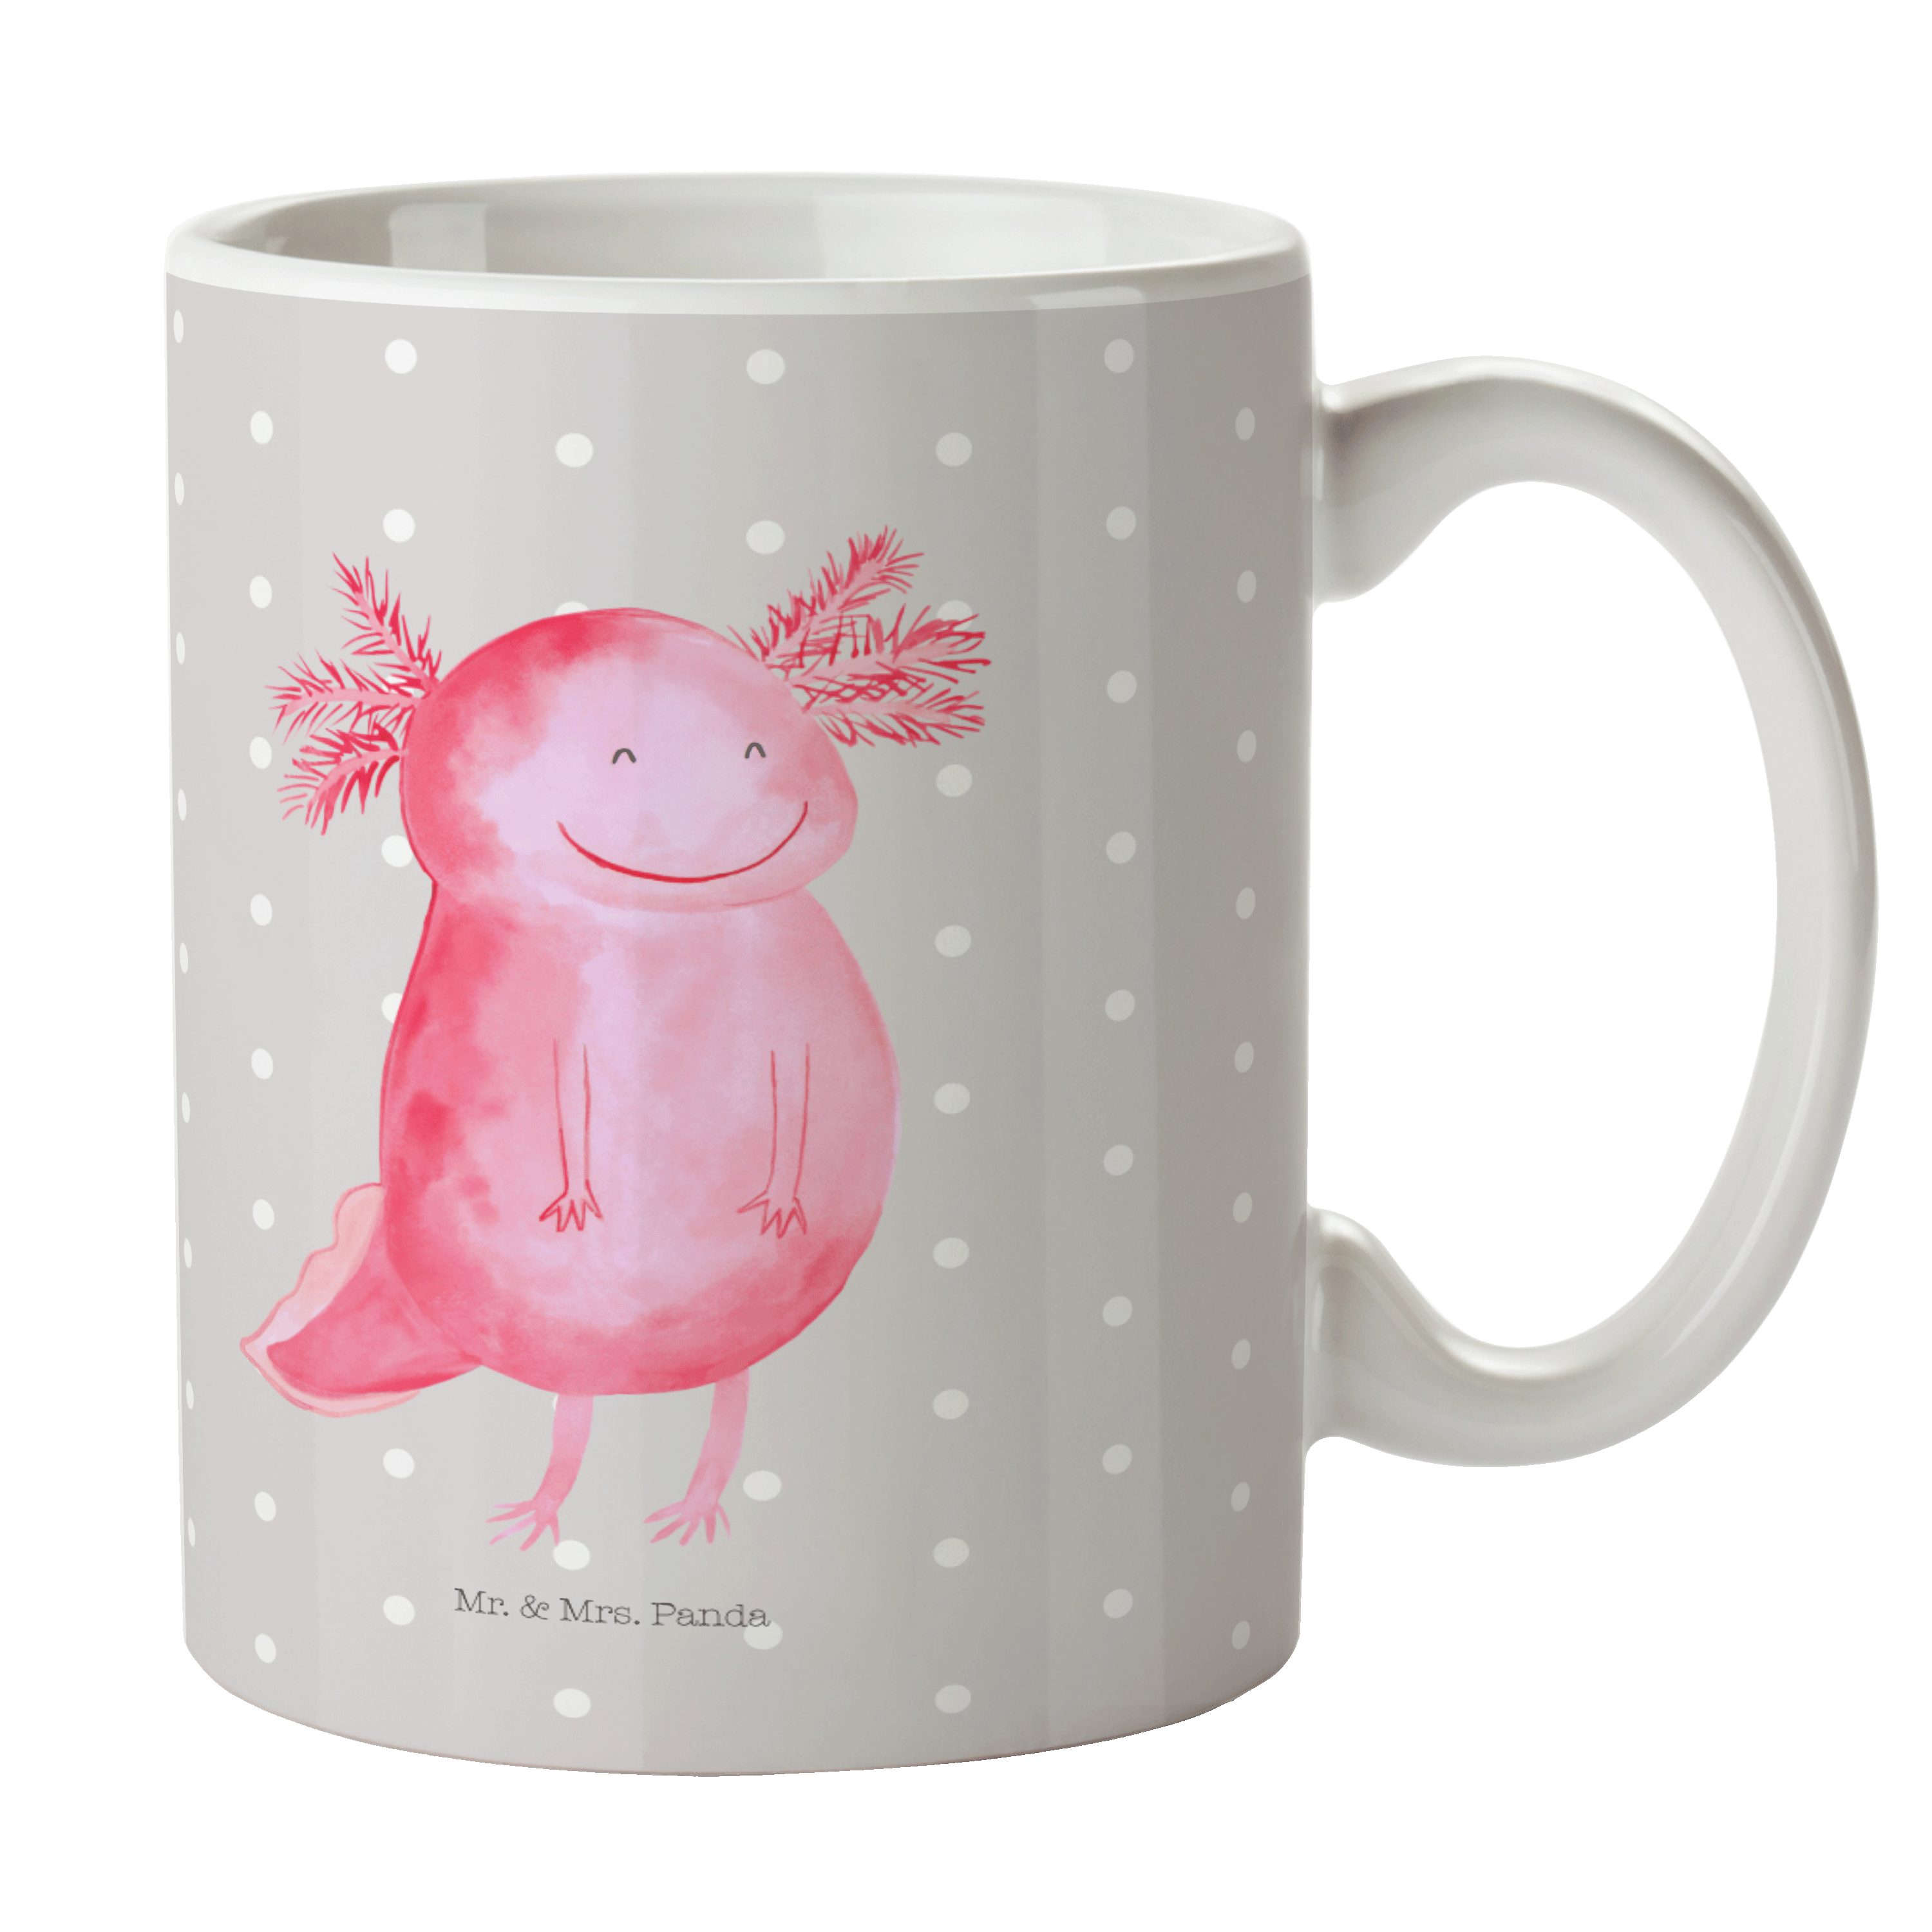 Mr. & Mrs. Panda Tasse Axolotl glücklich - Grau Pastell - Geschenk, Tasse, Tasse Sprüche, Sc, Keramik